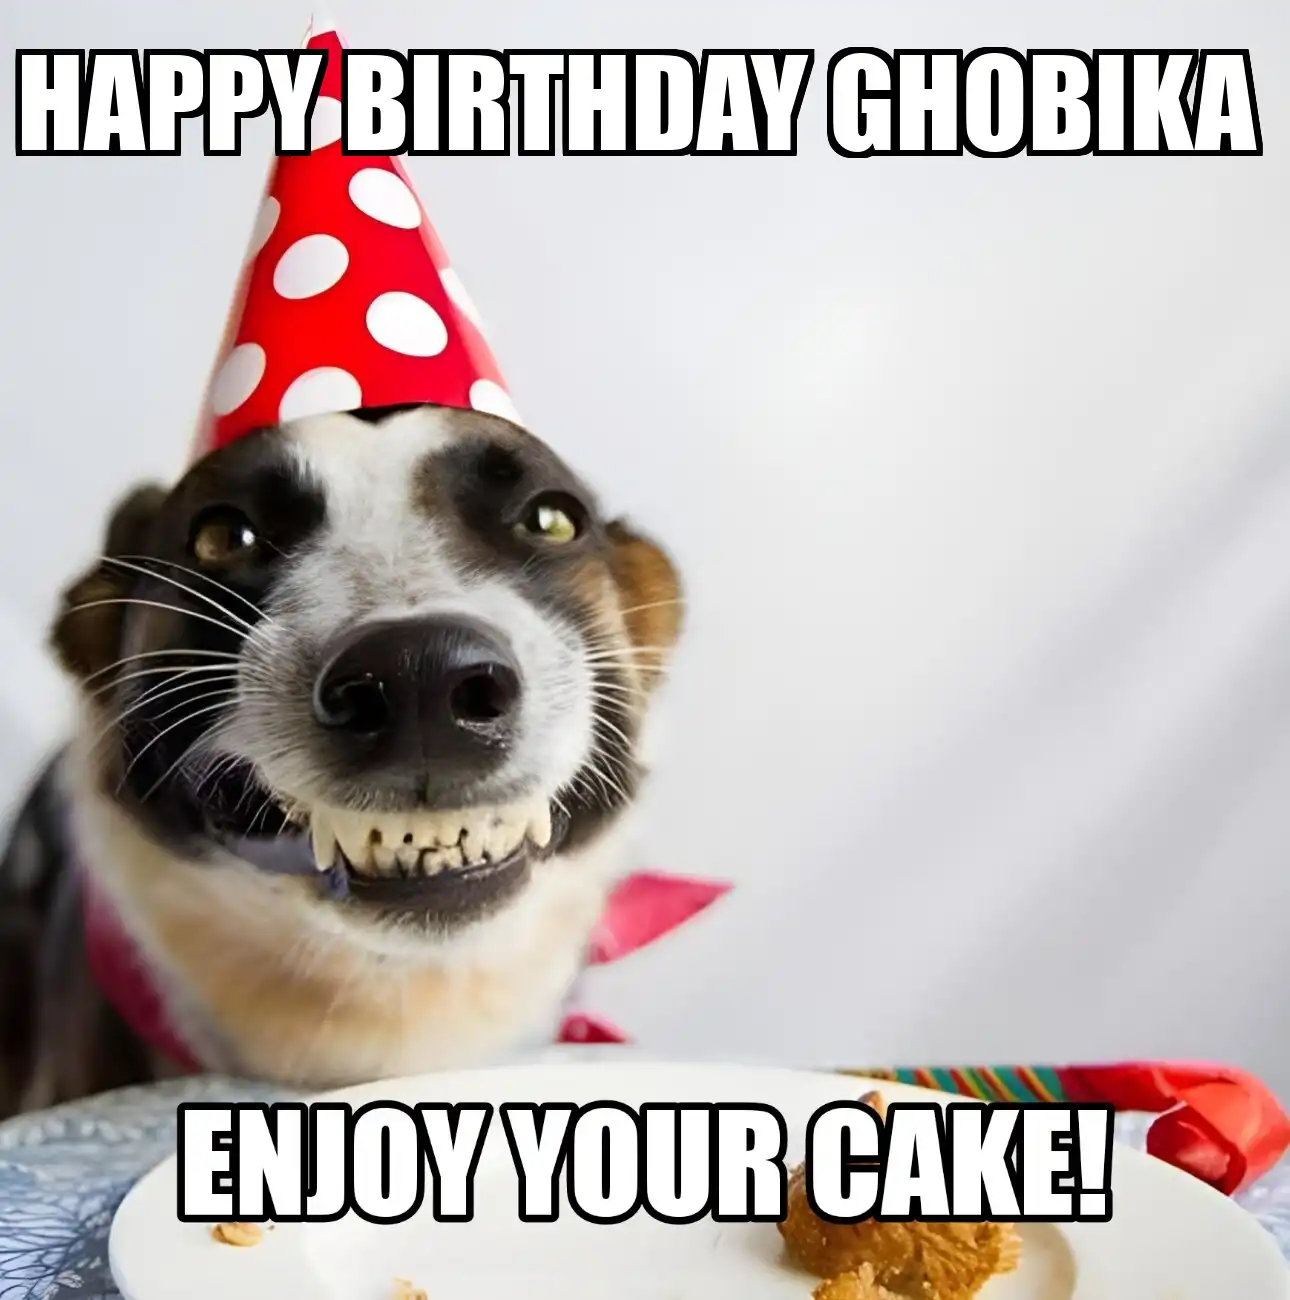 Happy Birthday Ghobika Enjoy Your Cake Dog Meme